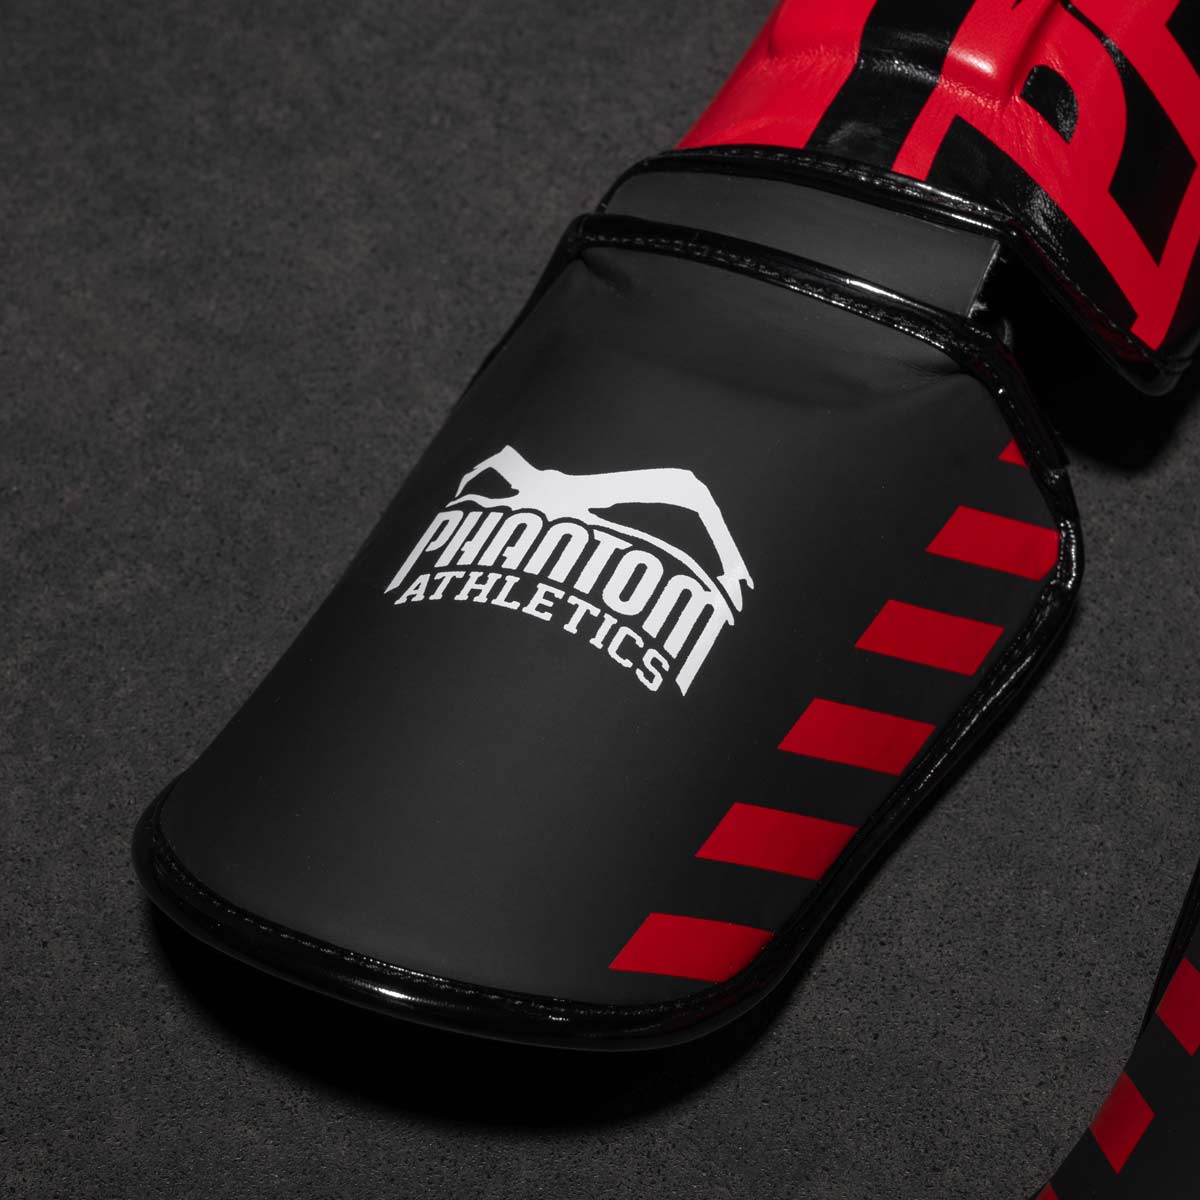 Phantom Kampfsport Schienbeinschoner für Kickboxen, MMA und Muay Thai. Ultimativer Schutz in Training und Wettkampf.